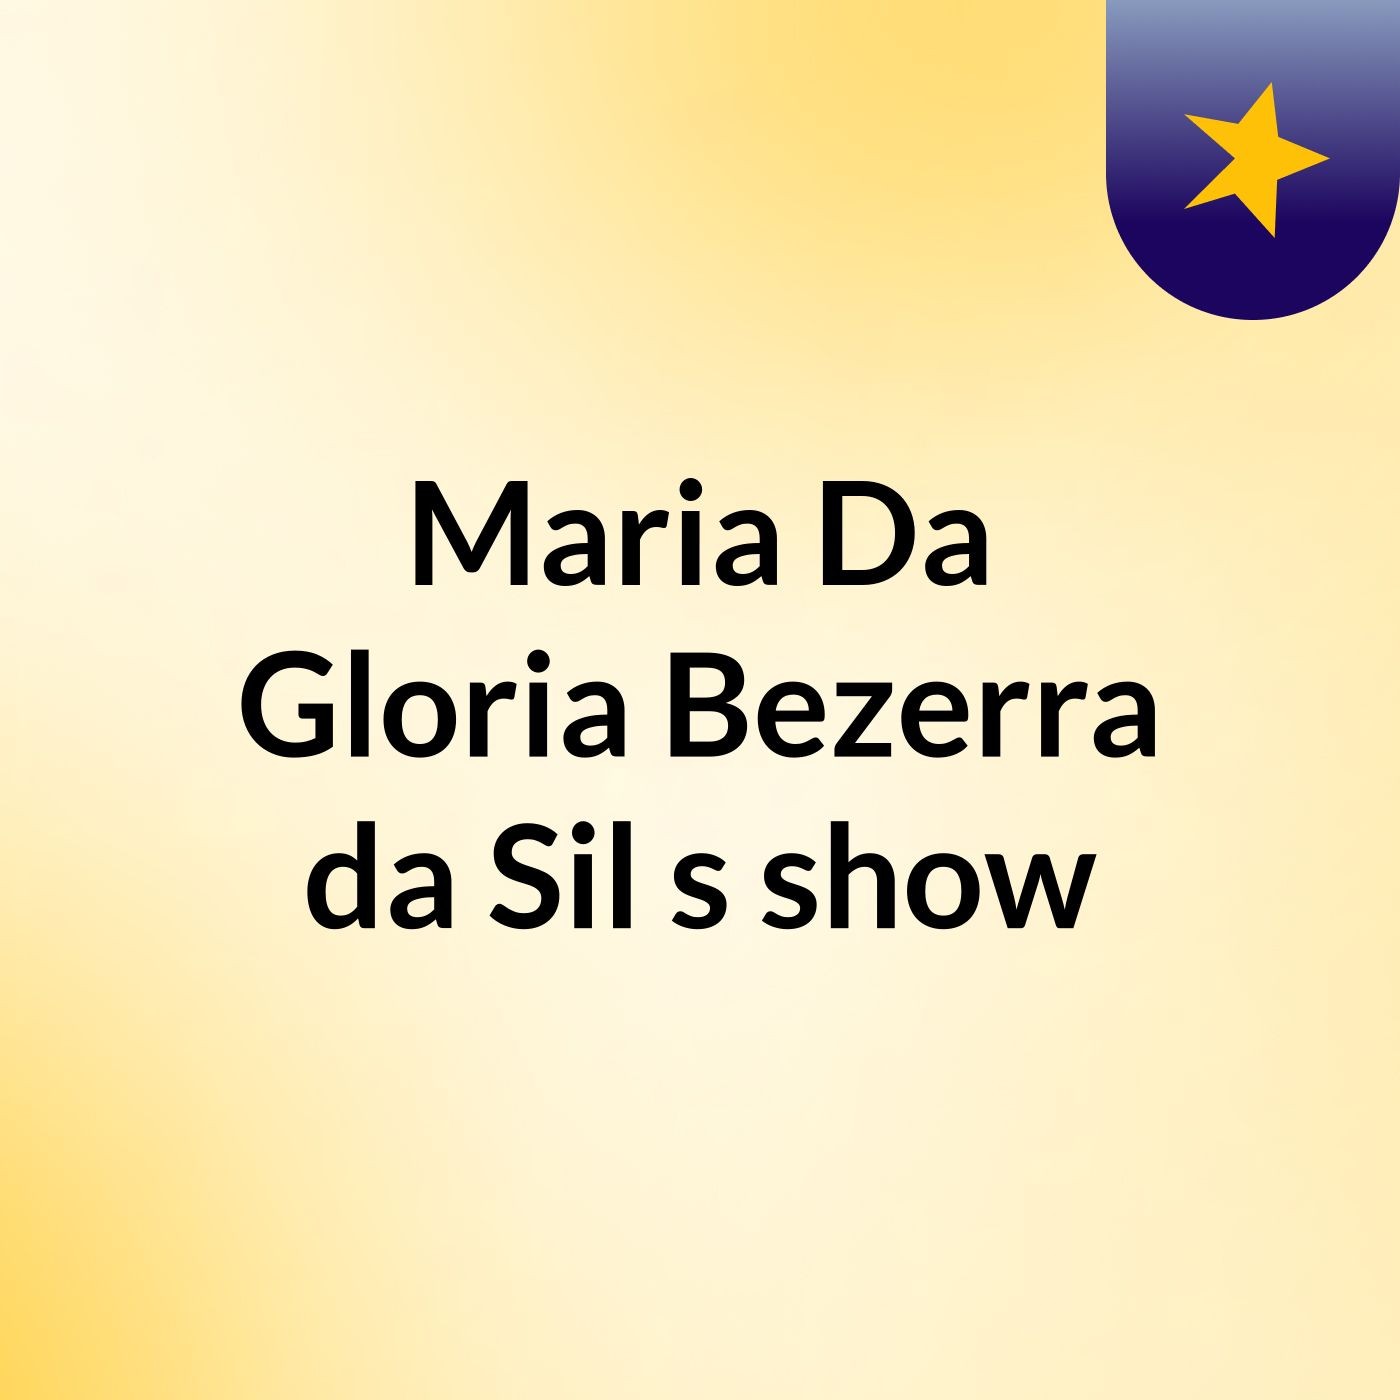 Maria Da Gloria Bezerra da Sil's show